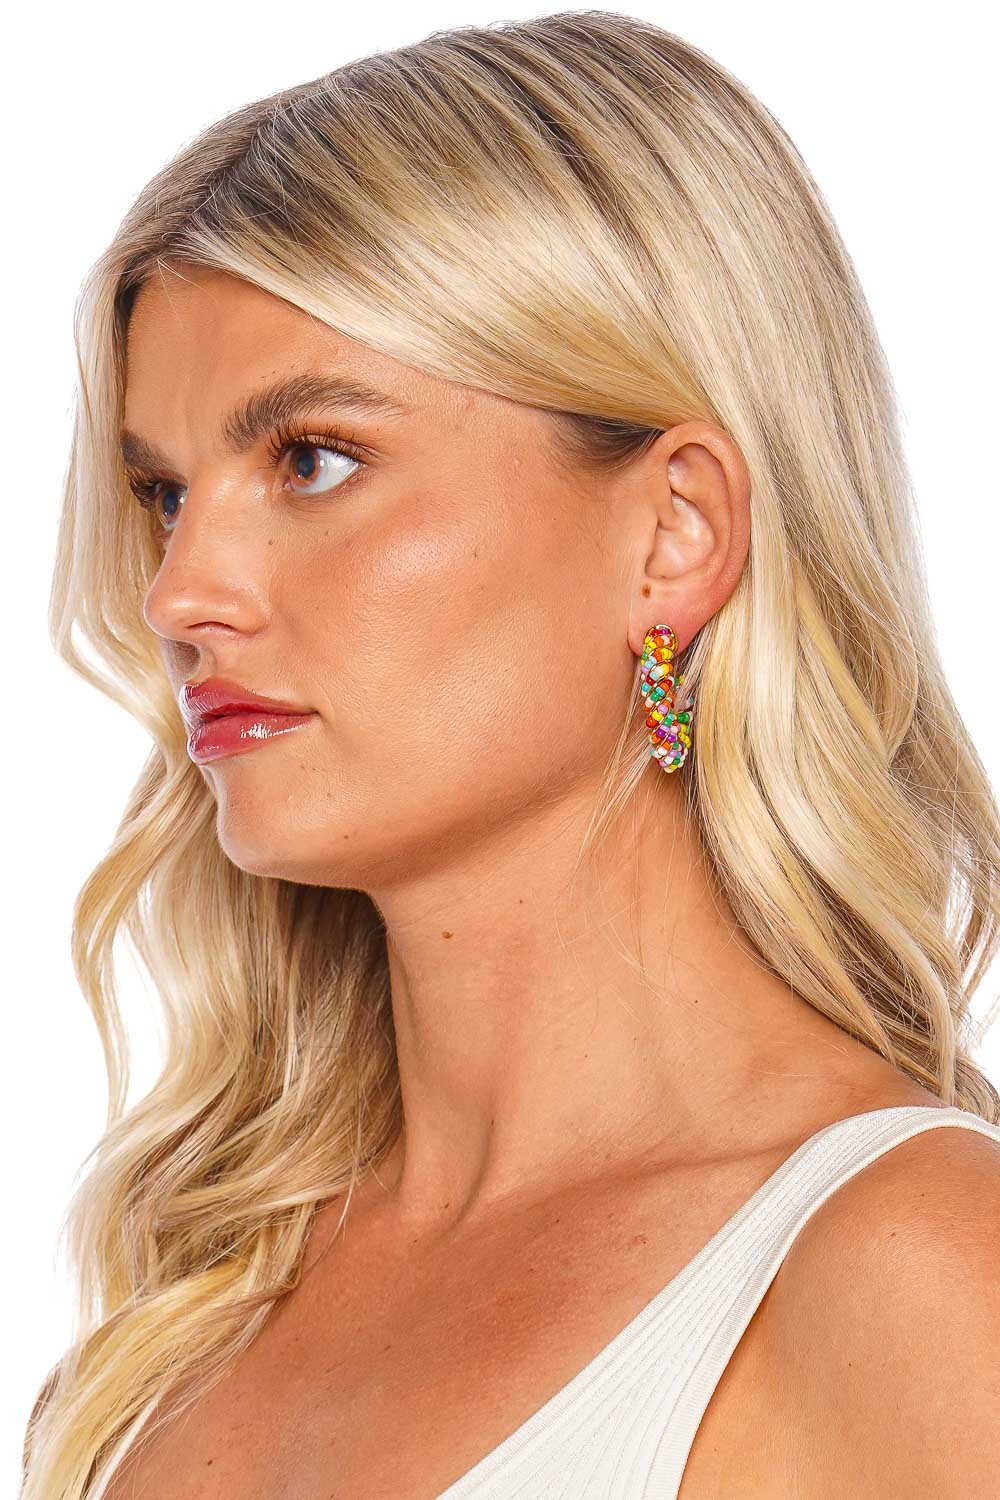 Crystal Haze Jewelry Tutti Frutti Beaded Hoop Earrings